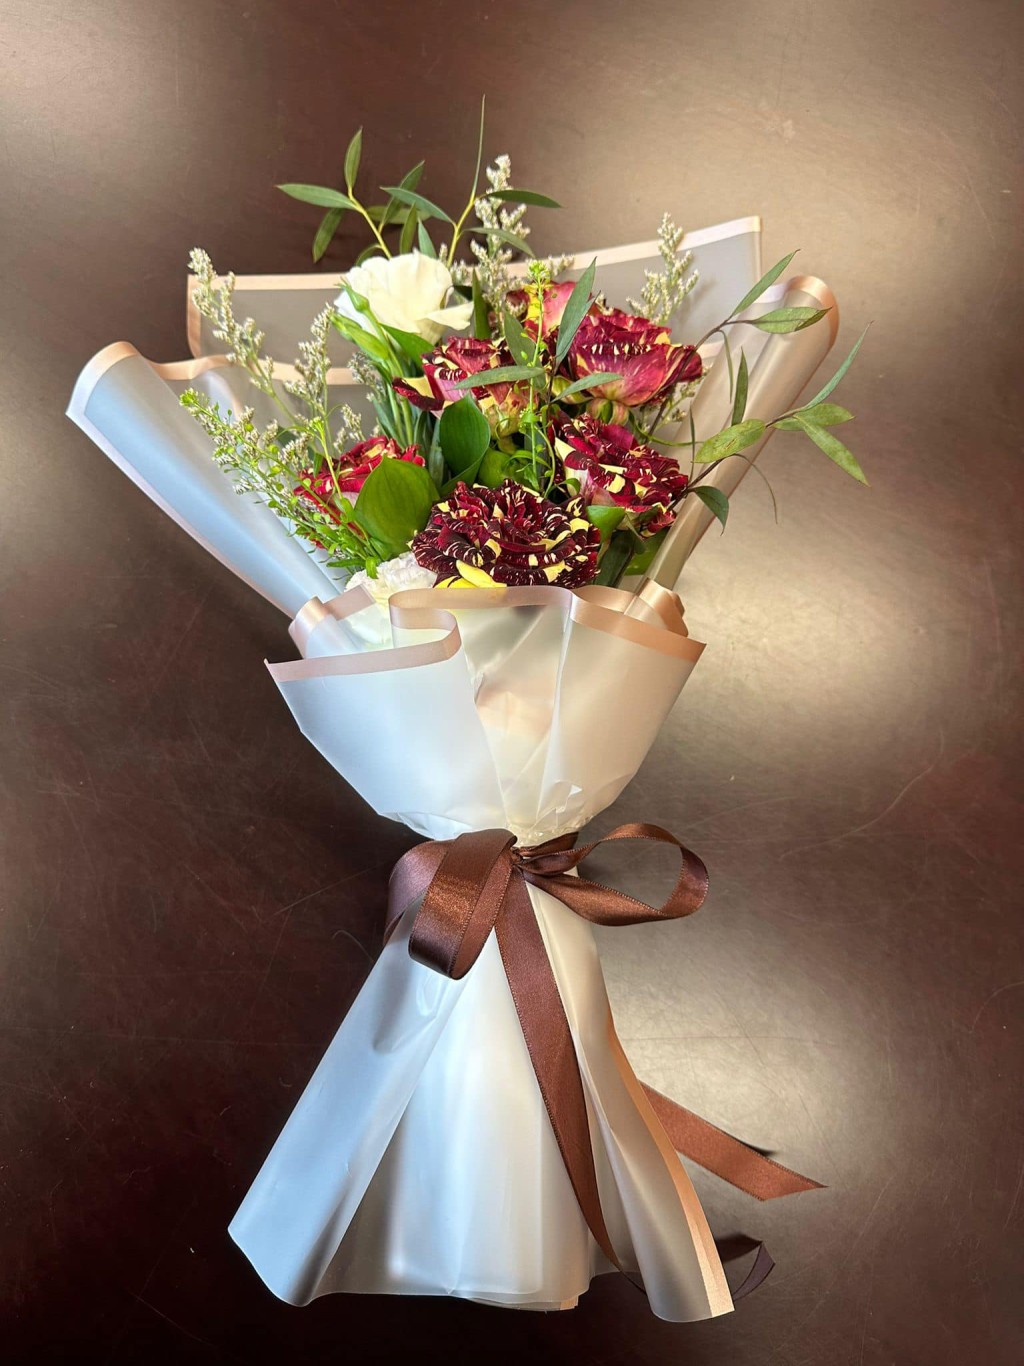 正在澳洲访问的蔡若莲今日亦在社交平台回应李家超，表示很久没有收花了，感谢特首送来节日的惊喜。